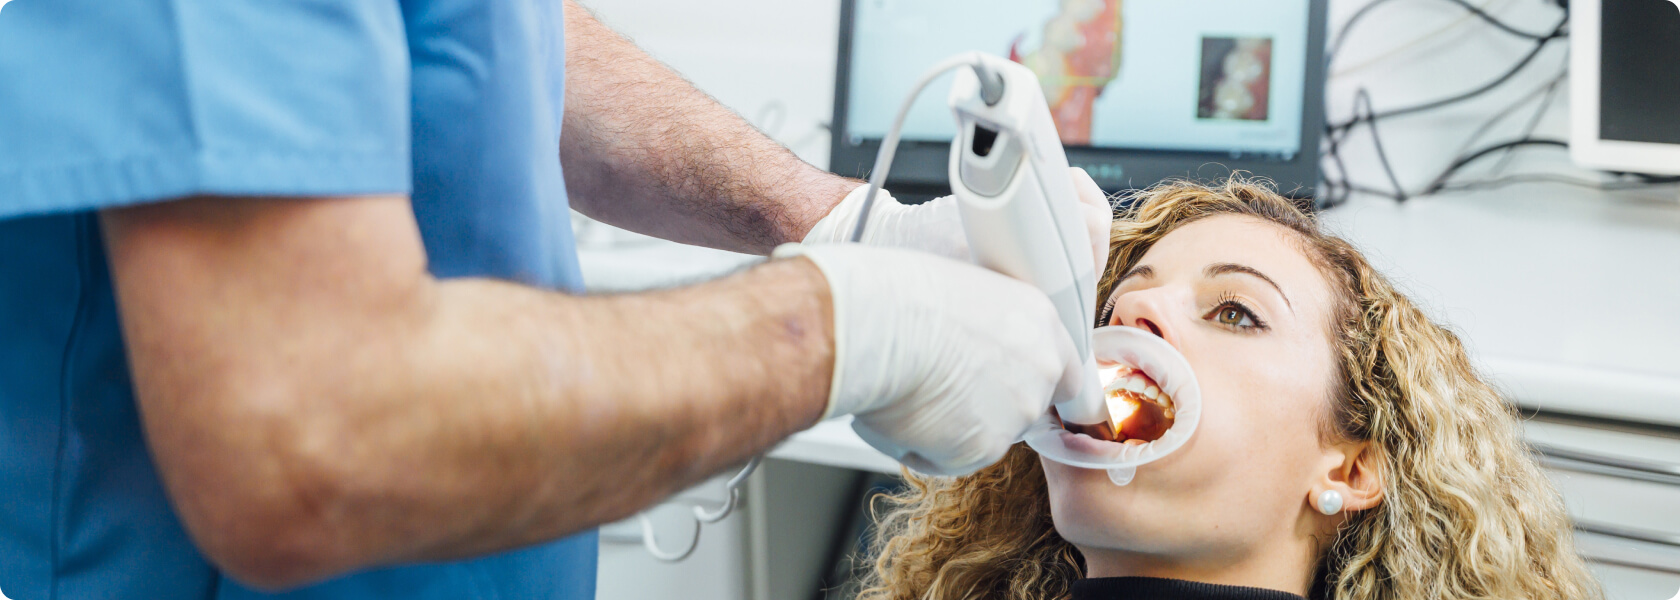 Zahnabdruck - Was ist der digitale Zahnabdruck und wie funktioniert er?